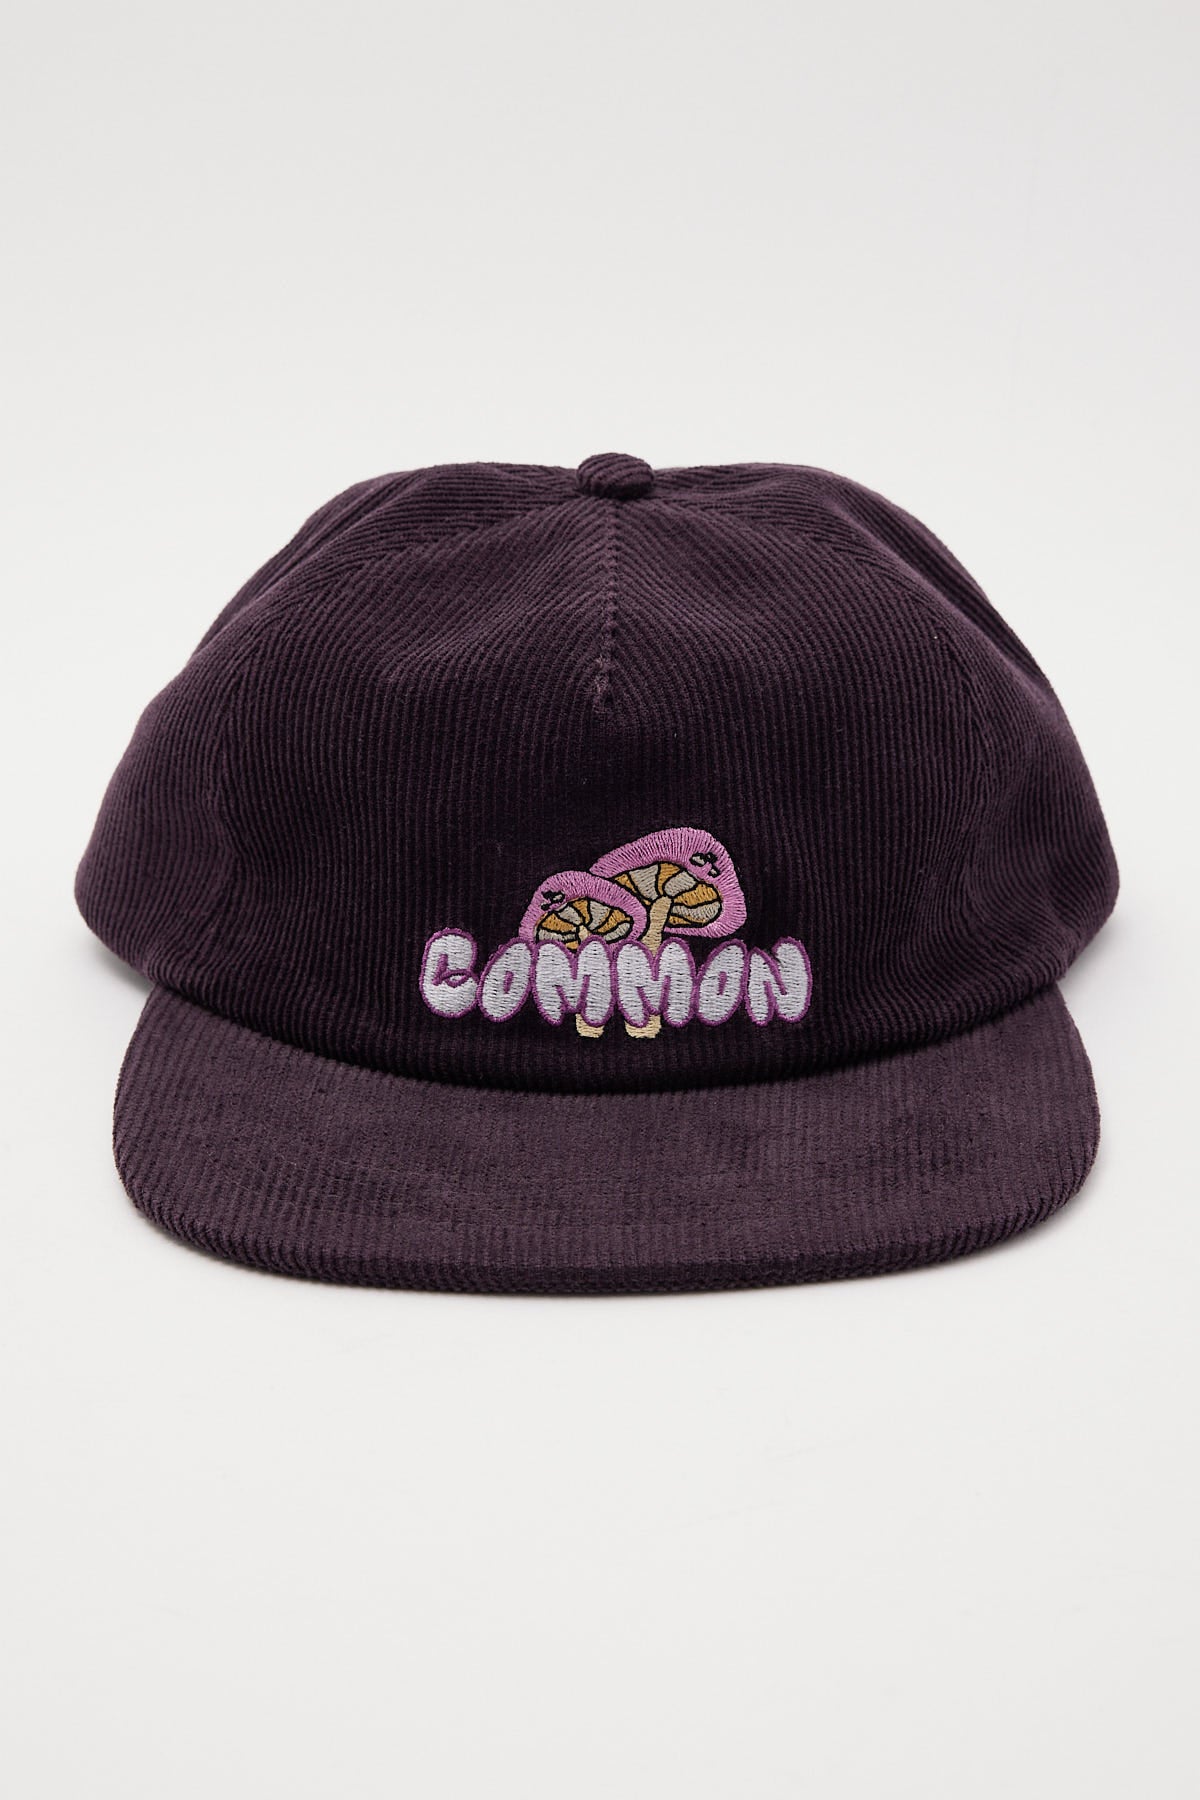 Common Need Mushroom Cord Cap Purple